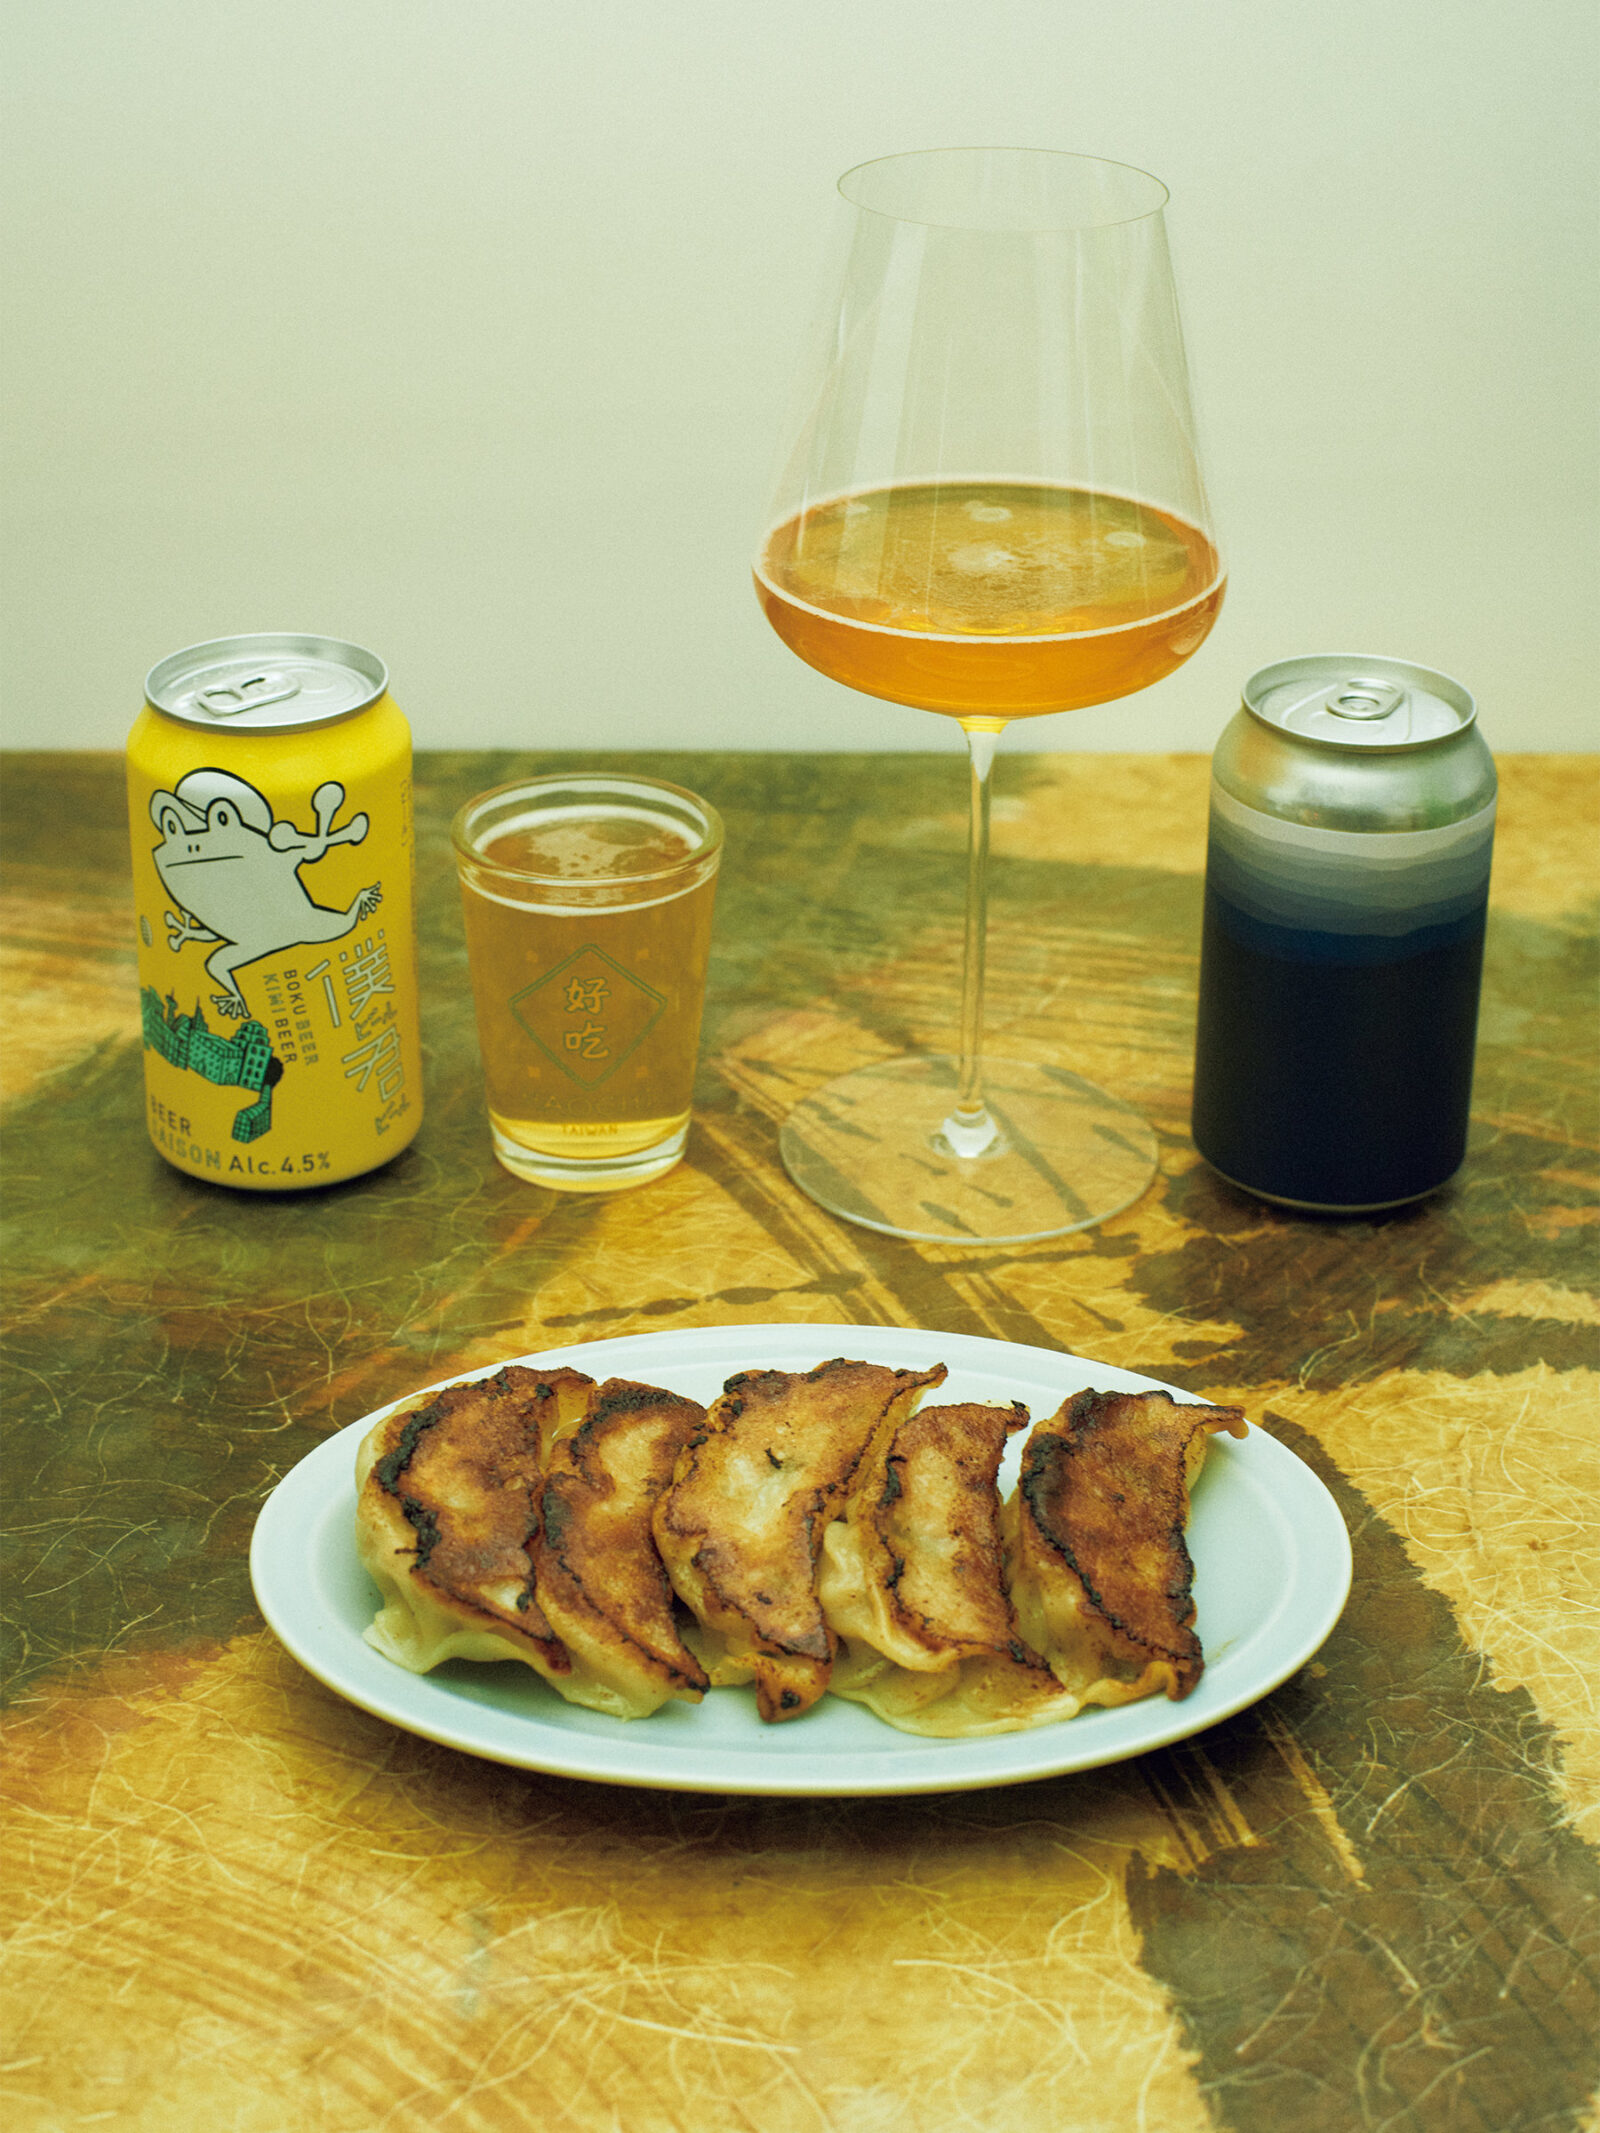 〈中華料理幸楽〉の餃子、IBUSHI、僕ビール君ビール